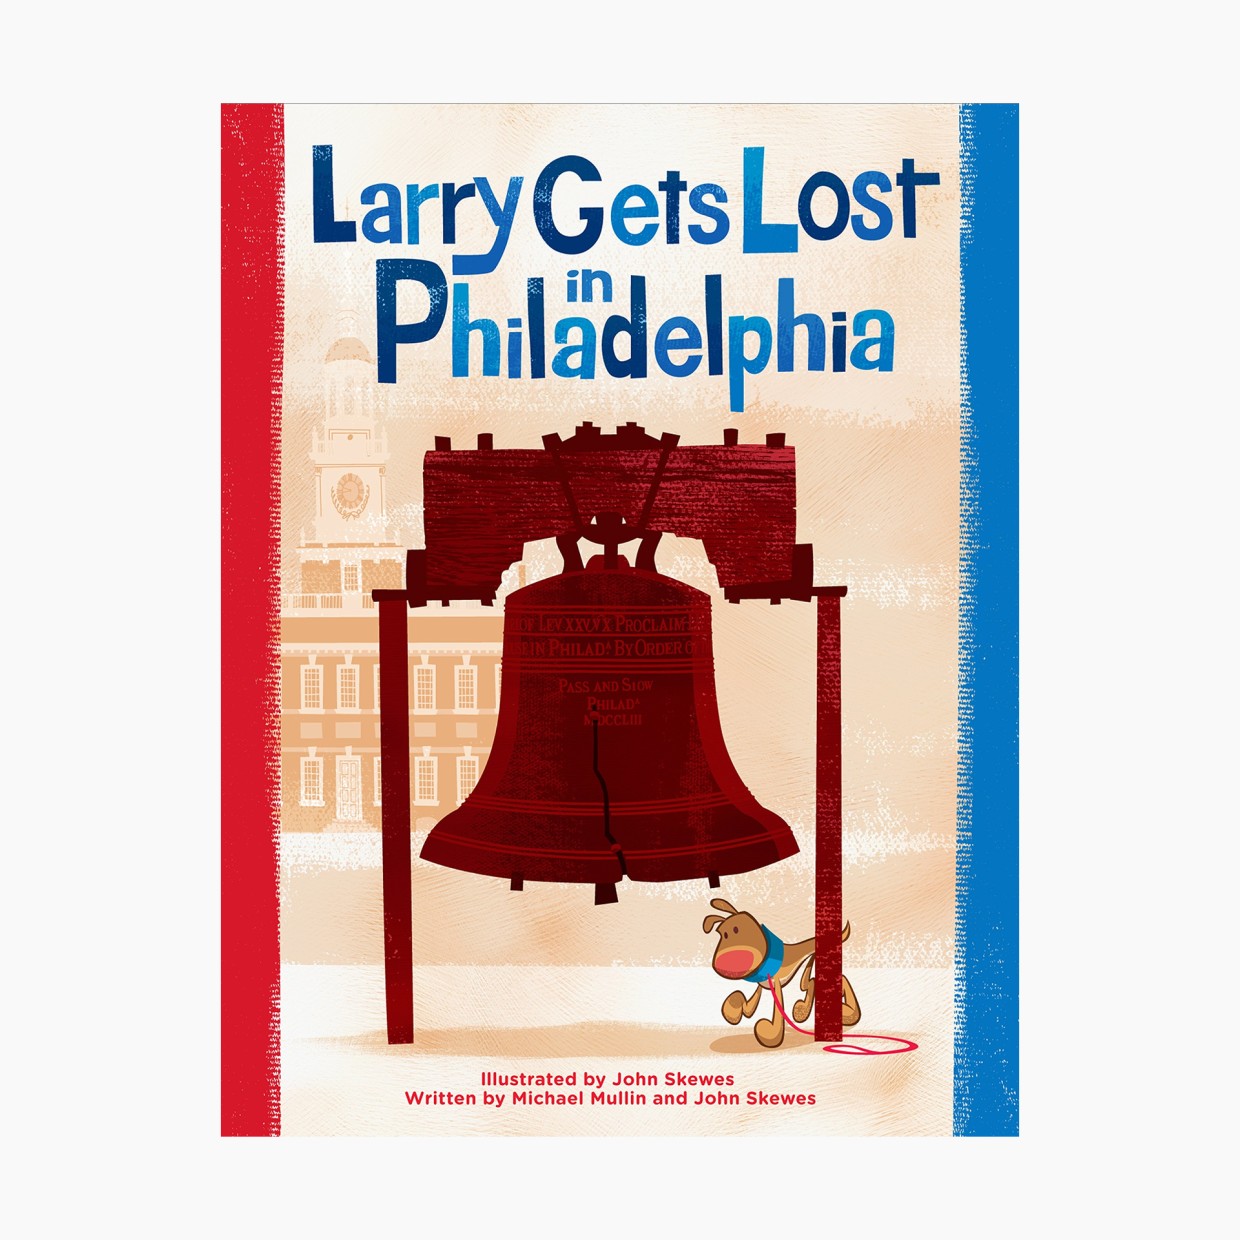 Larry Gets Los in Philadelphia.